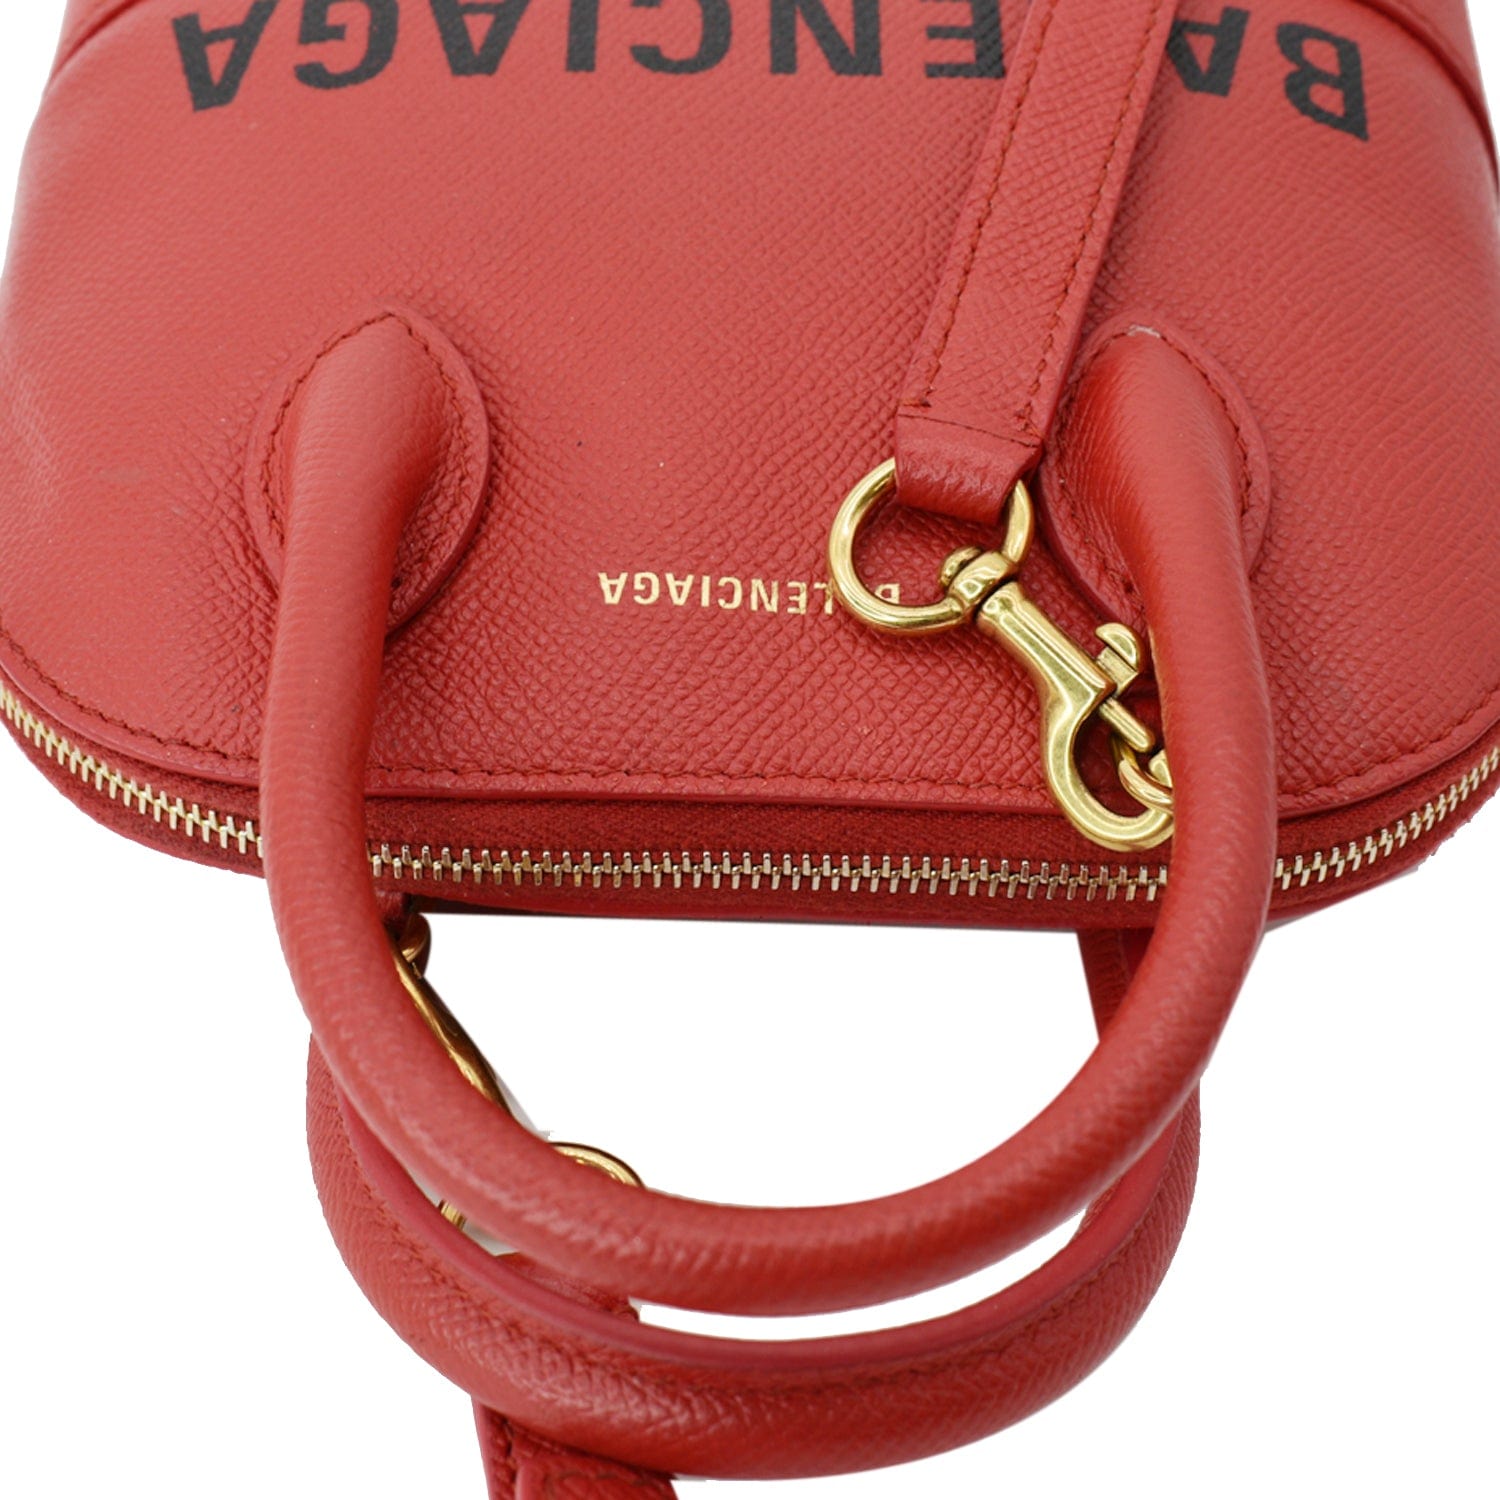 Balenciaga  Hourglass S tote bag  red calfskin leather  Tín đồ hàng hiệu